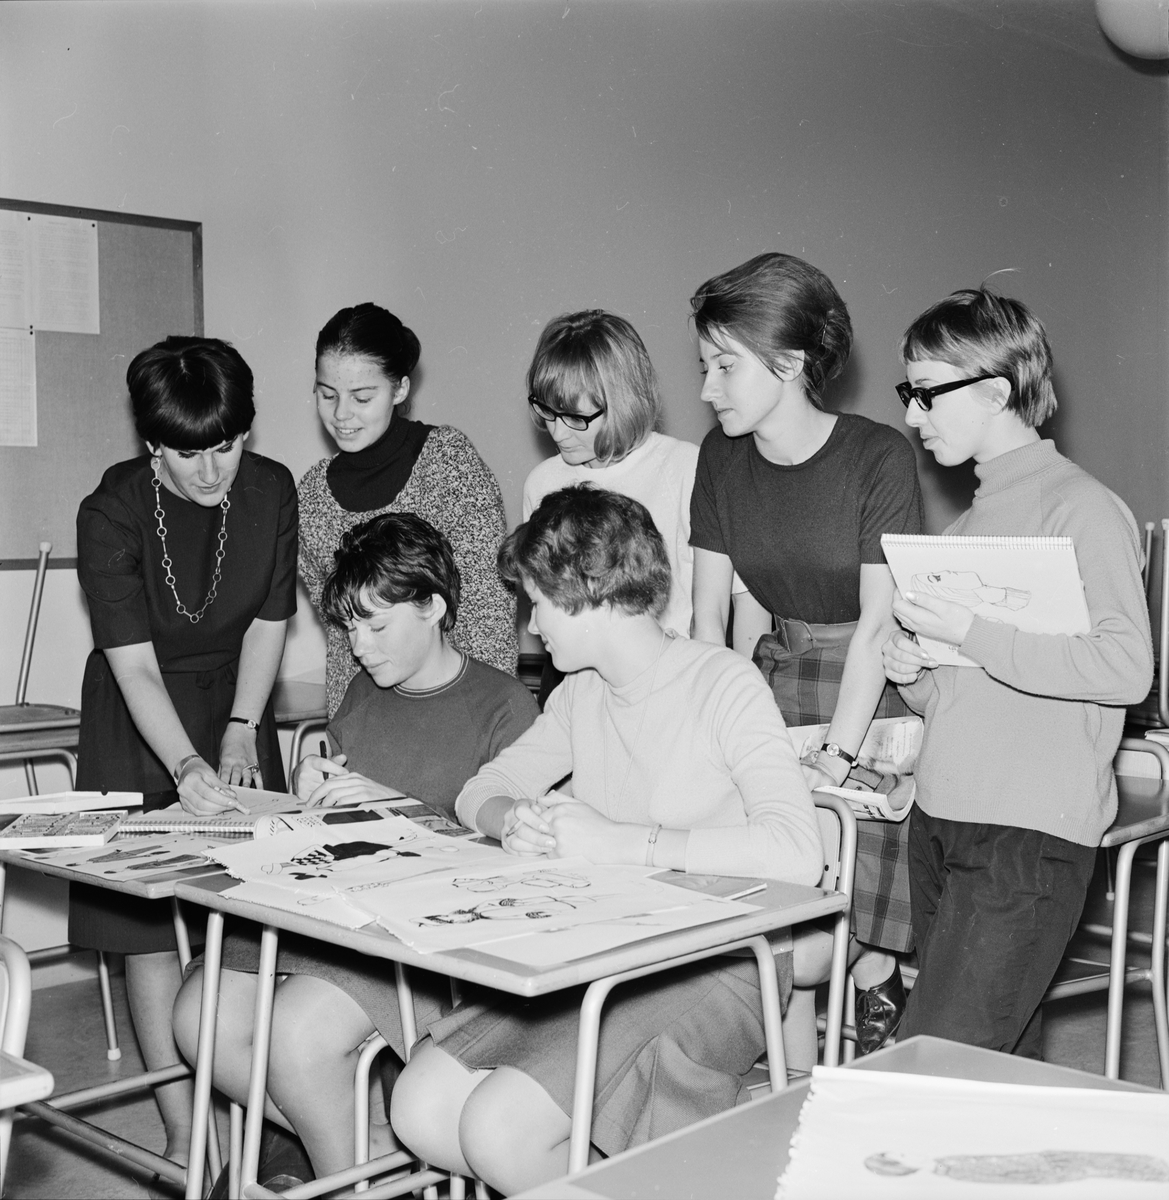 "Modeteckning på kursverksamheten", Uppsala 1964